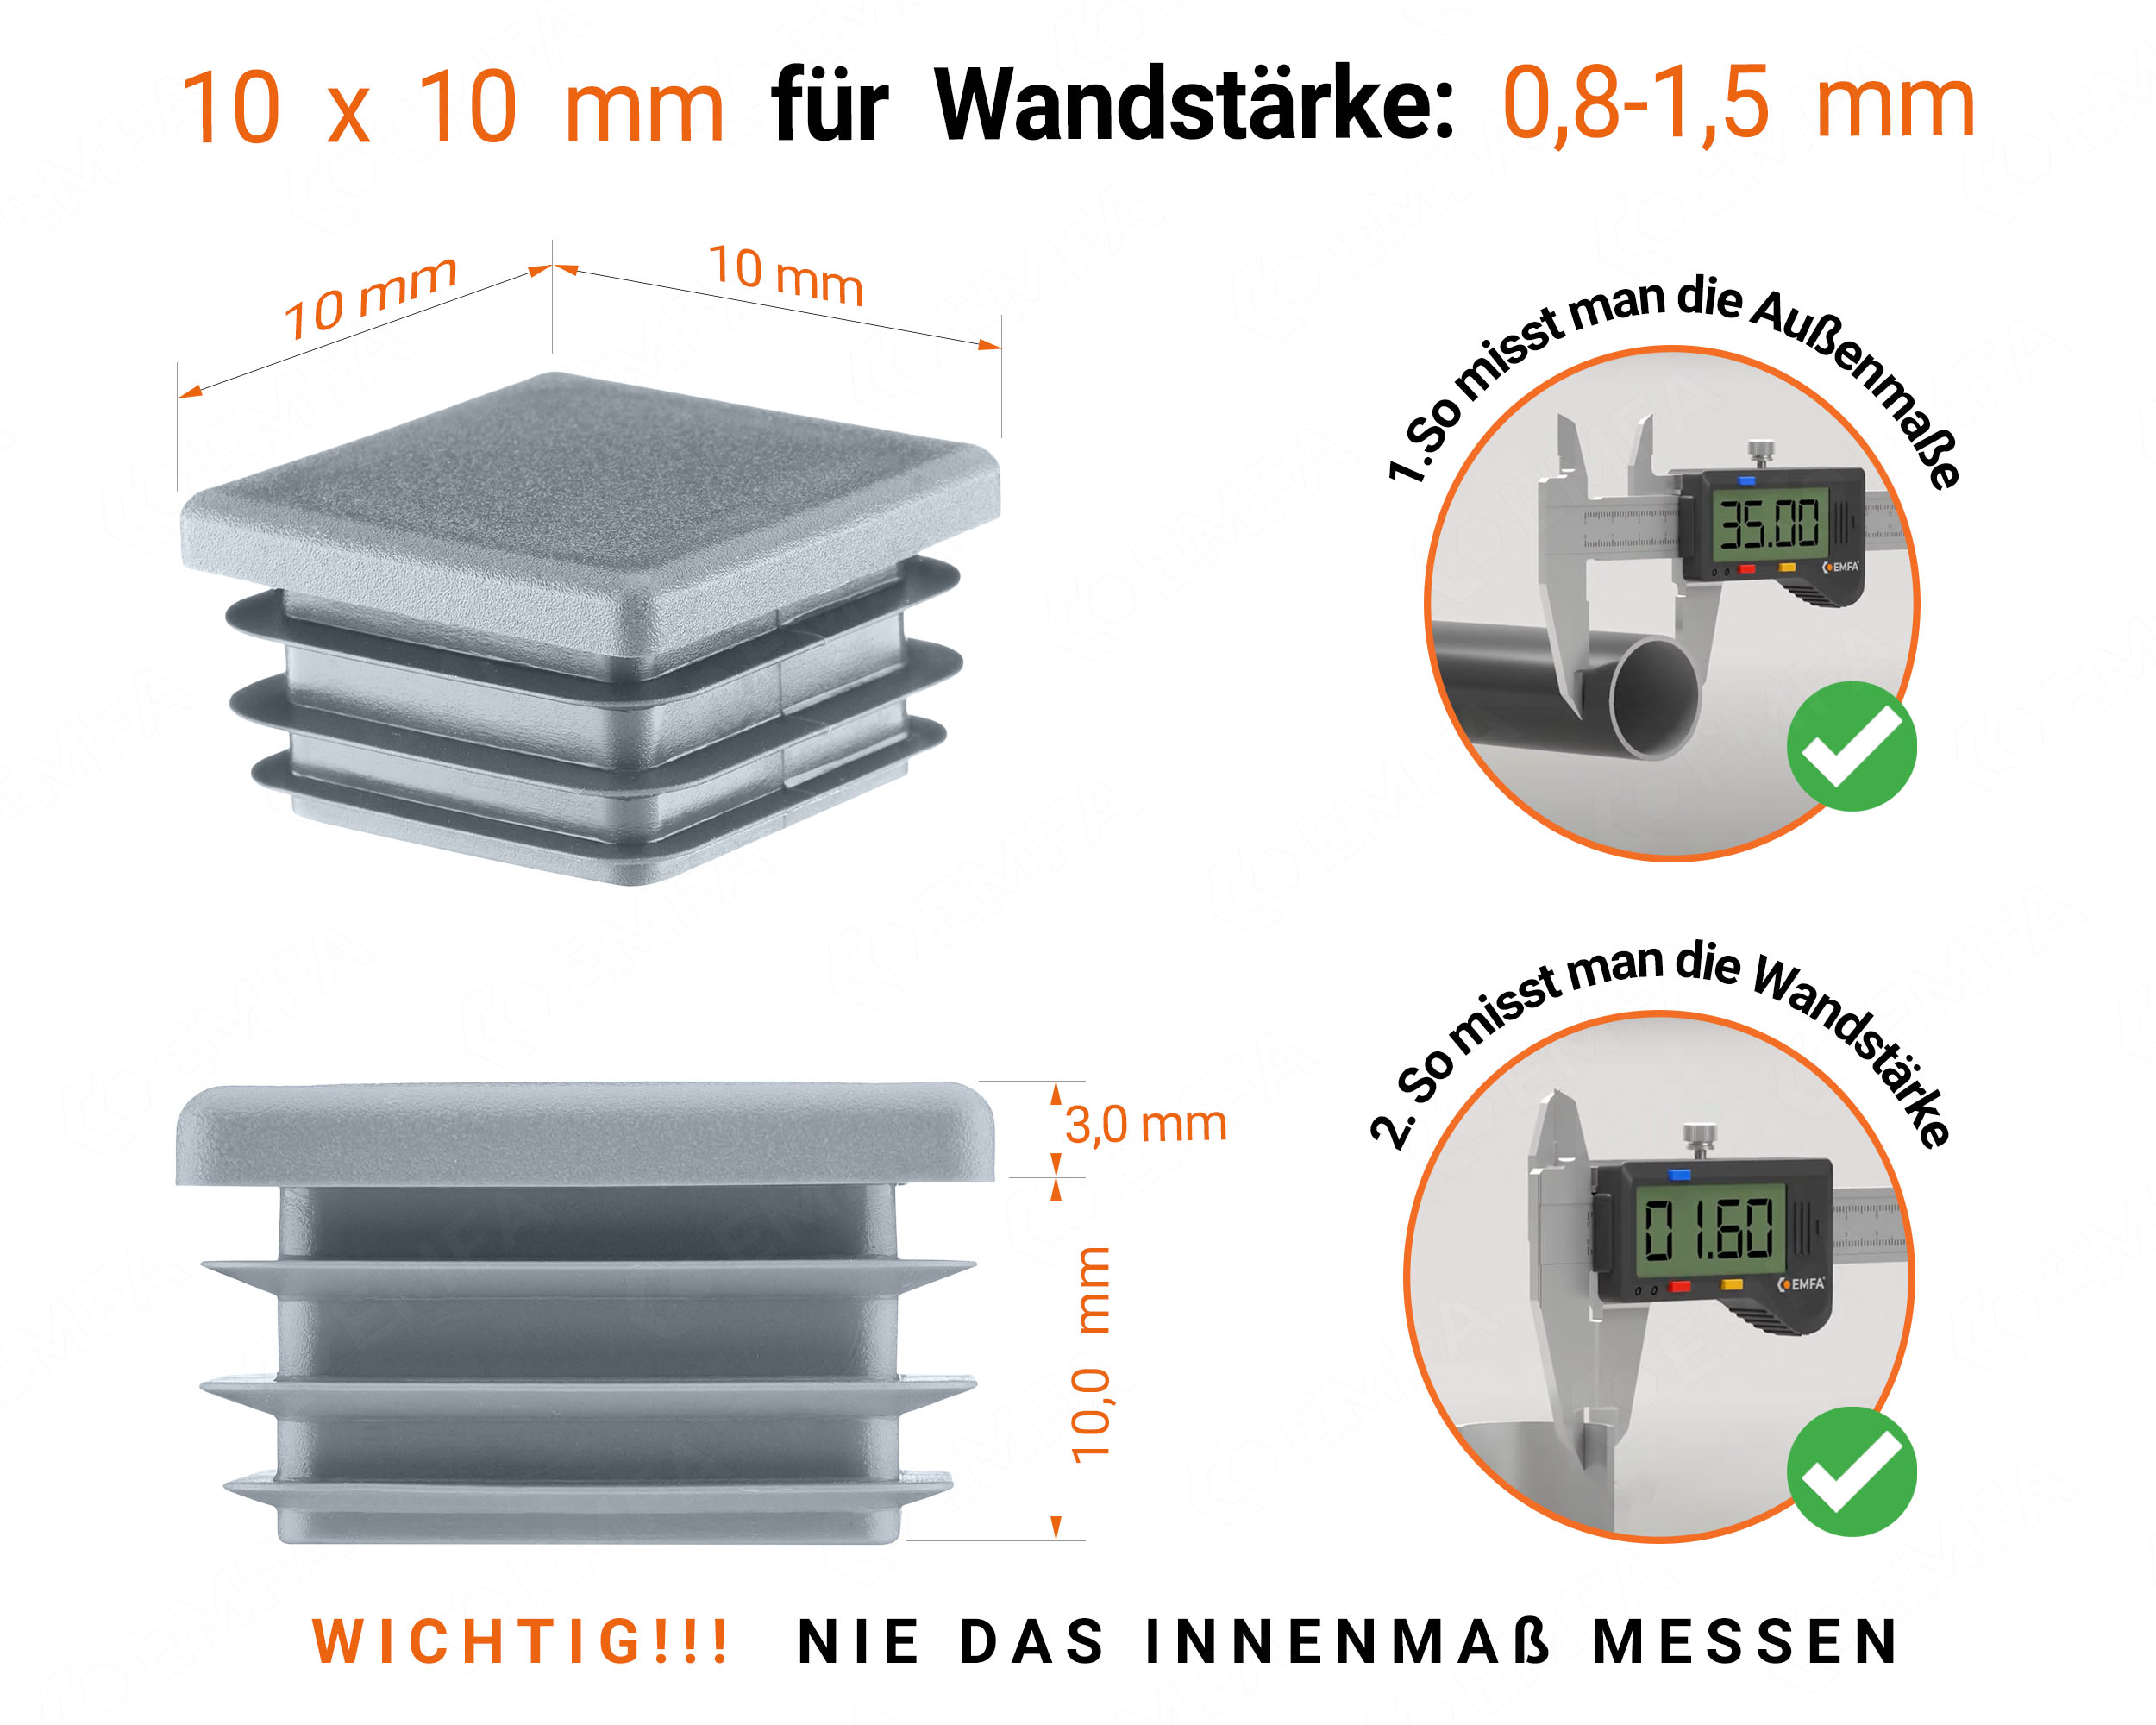 Grau Endkappe für Vierkantrohre in der Größe 10x10 mm mit technischen Abmessungen und Anleitung für korrekte Messung